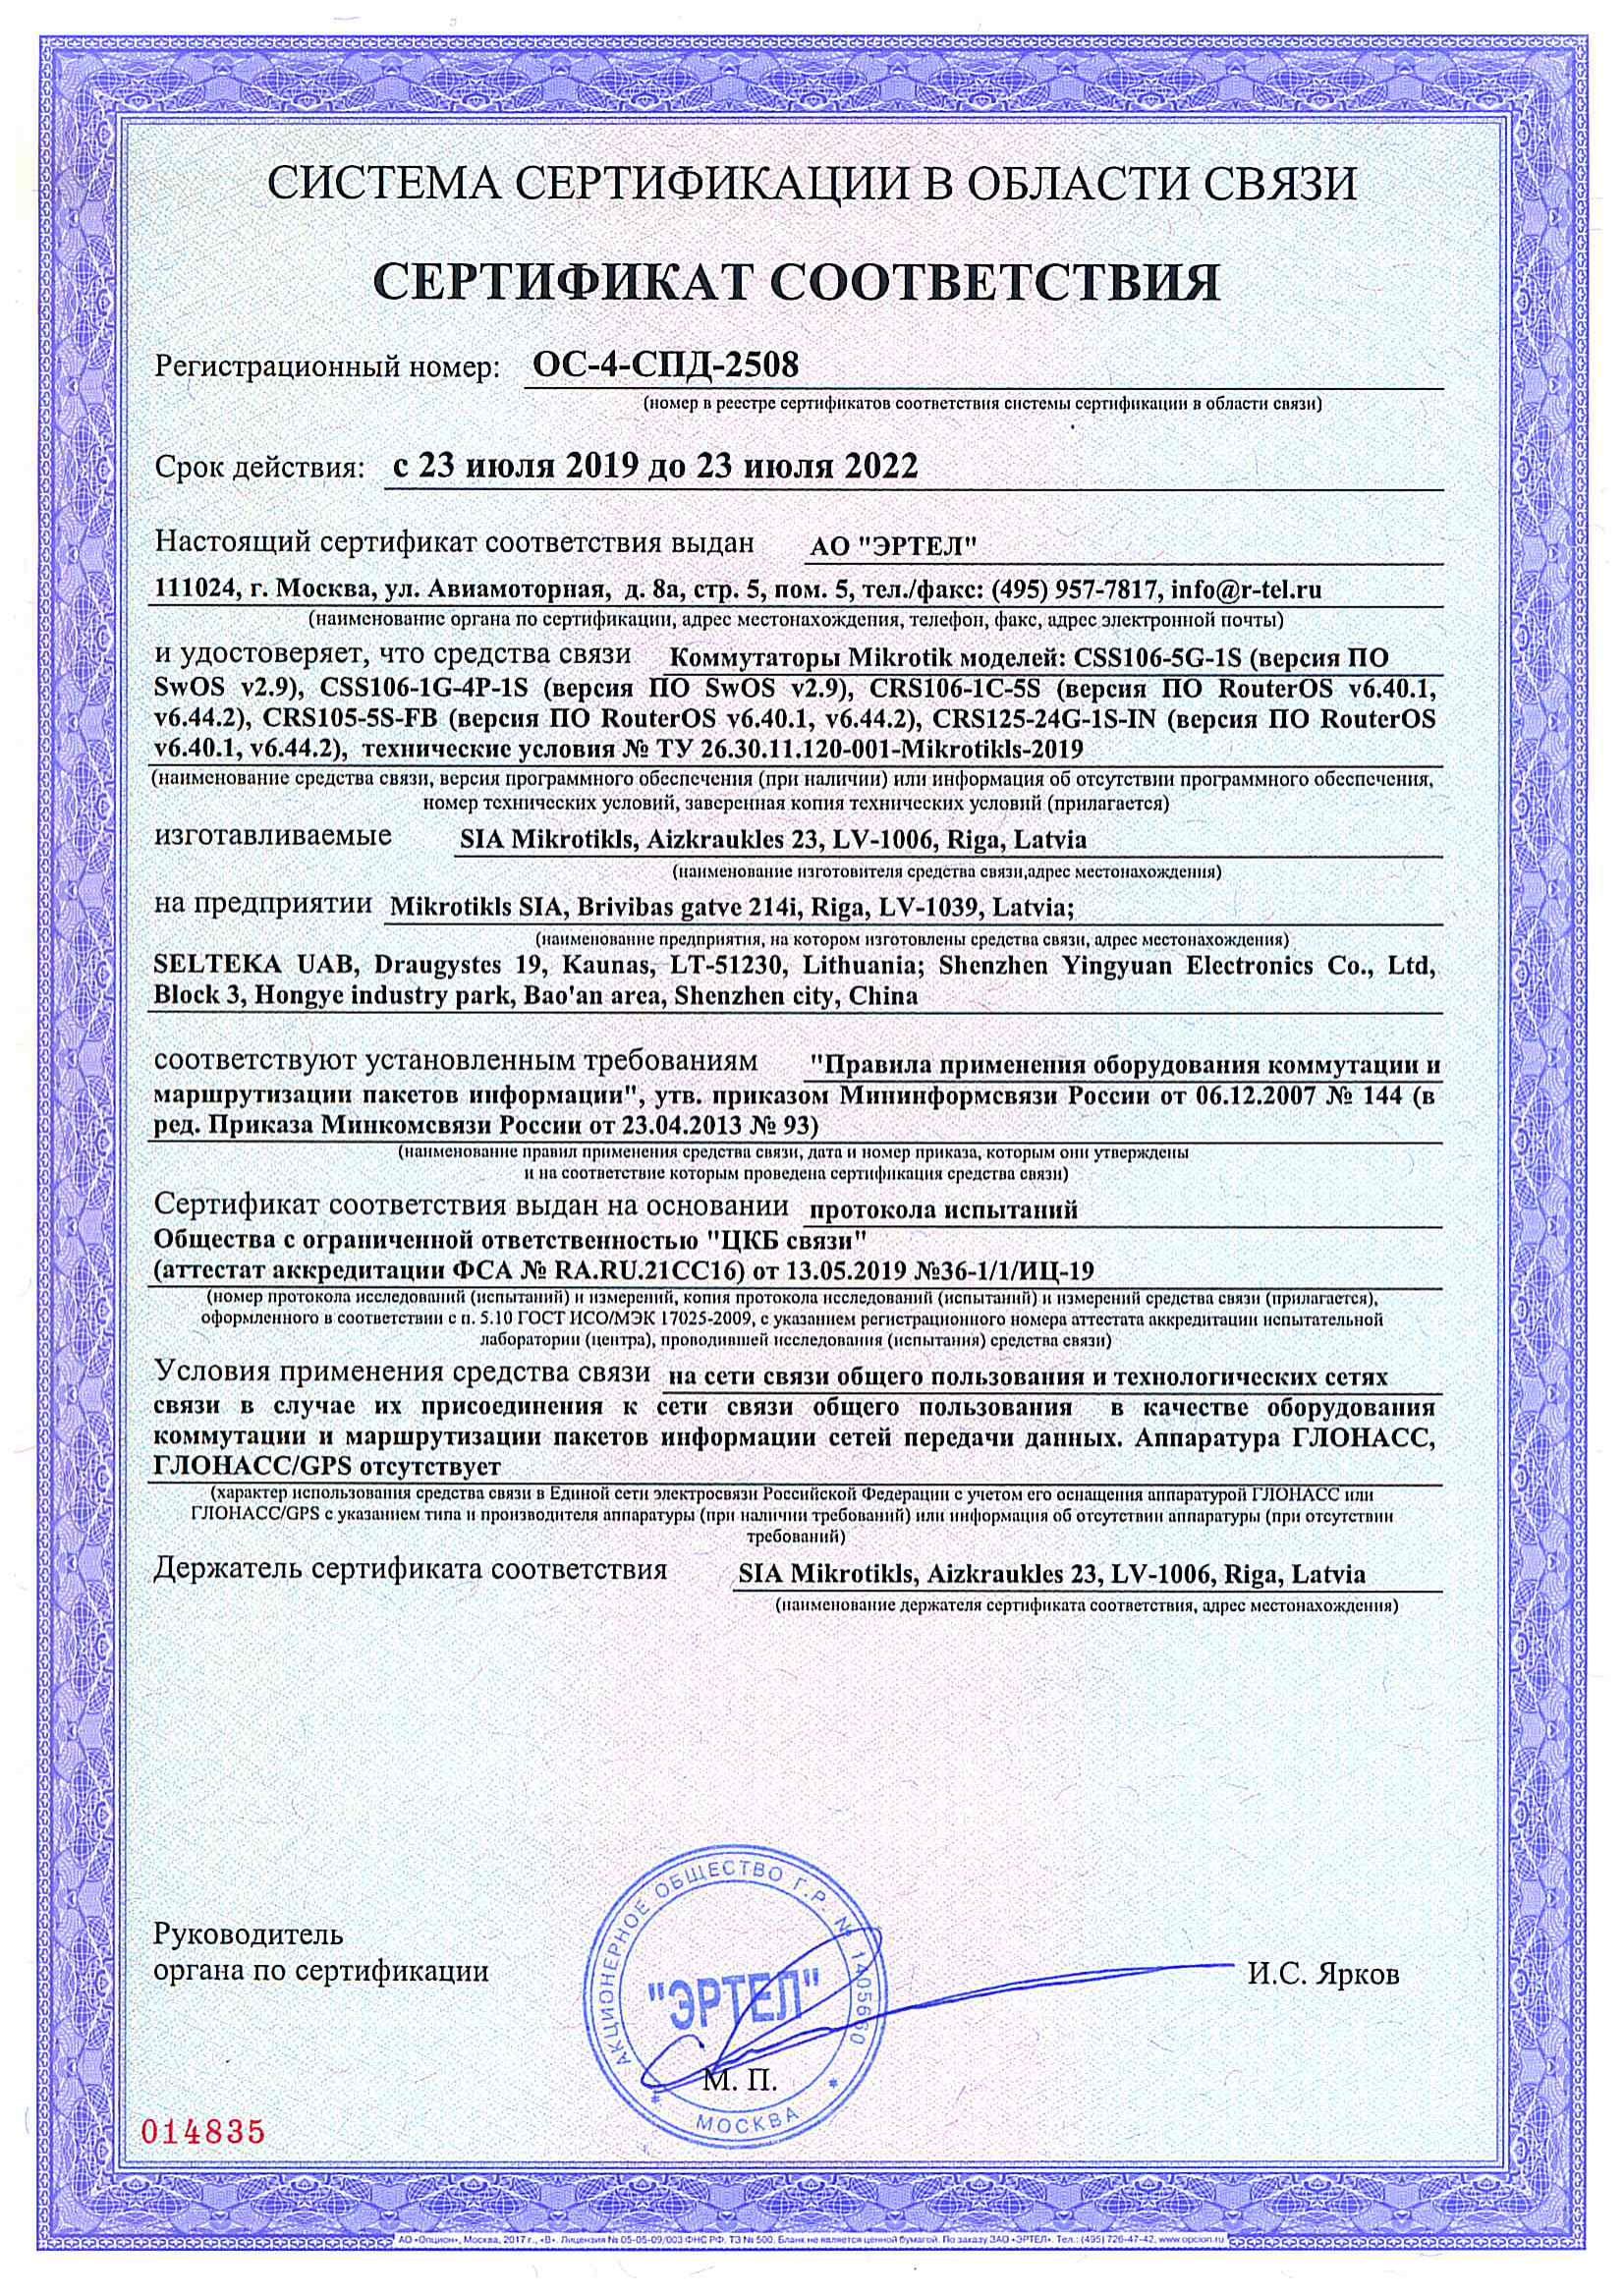 Сертификат соответствия в области связи ОС-4-СПД-2508